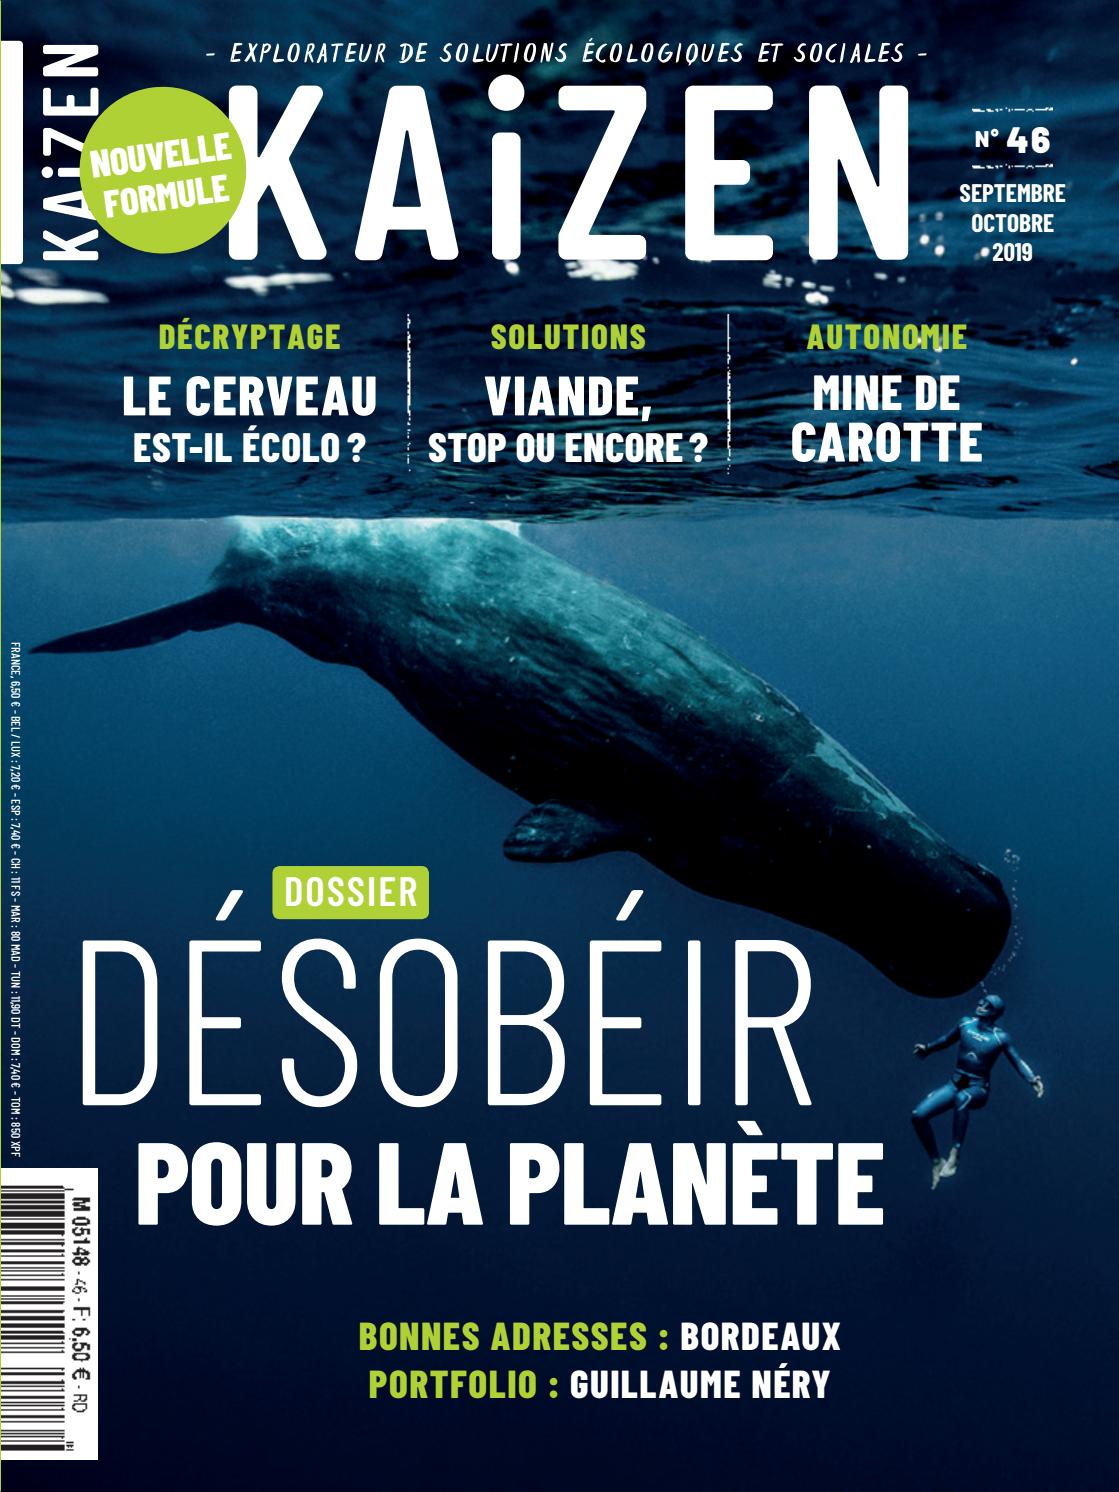 Enterrer Un Animal Dans son Jardin Beau Kaizen 46 Désobéir Pour La Plan¨te by Kaizen Magazine issuu